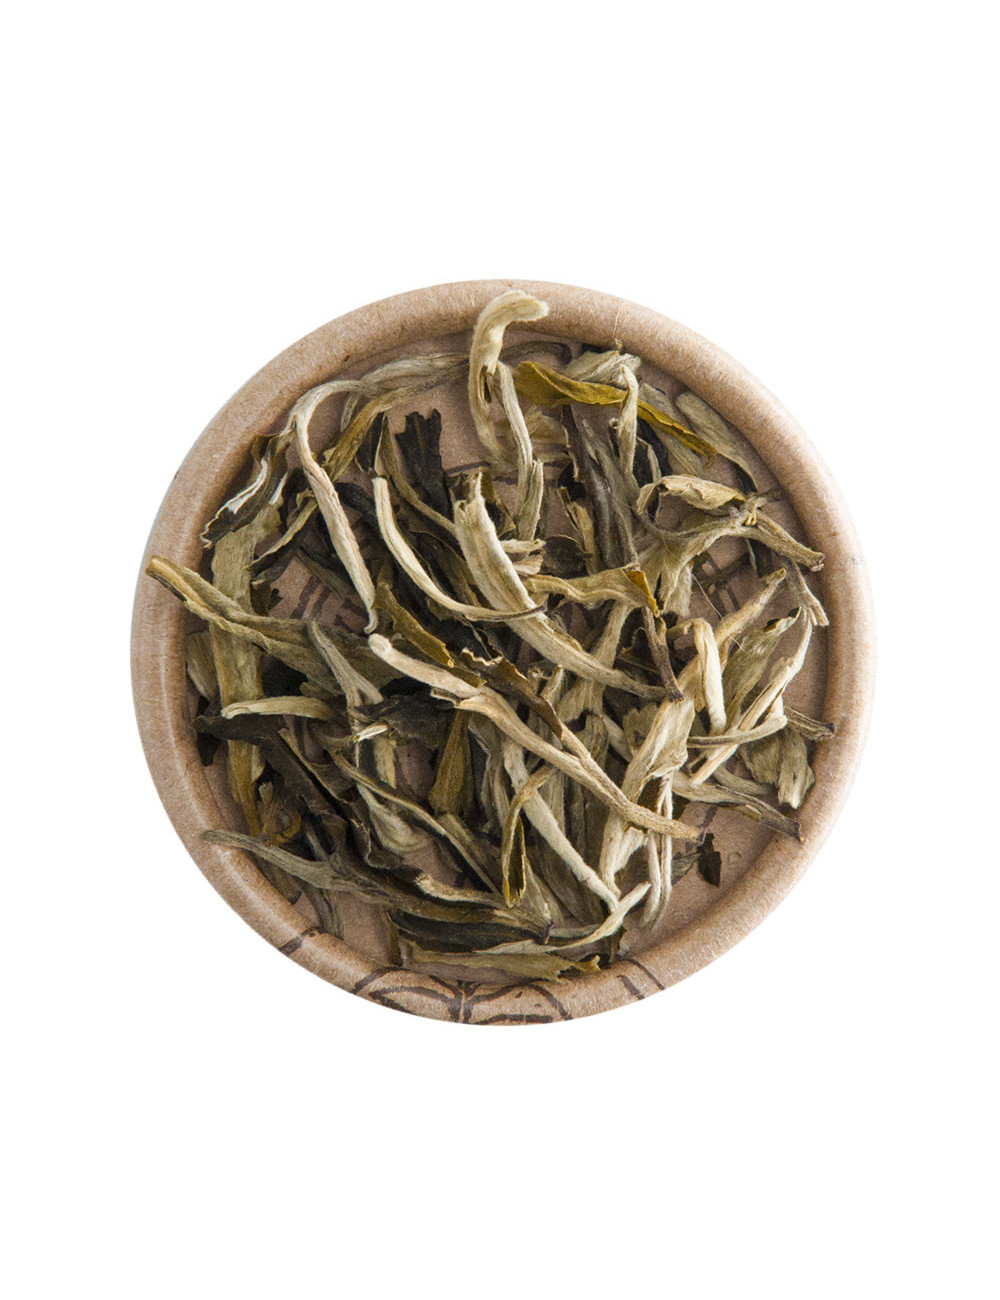 “Moonlight” White Himalaya tè bianco - La Pianta del Tè shop online